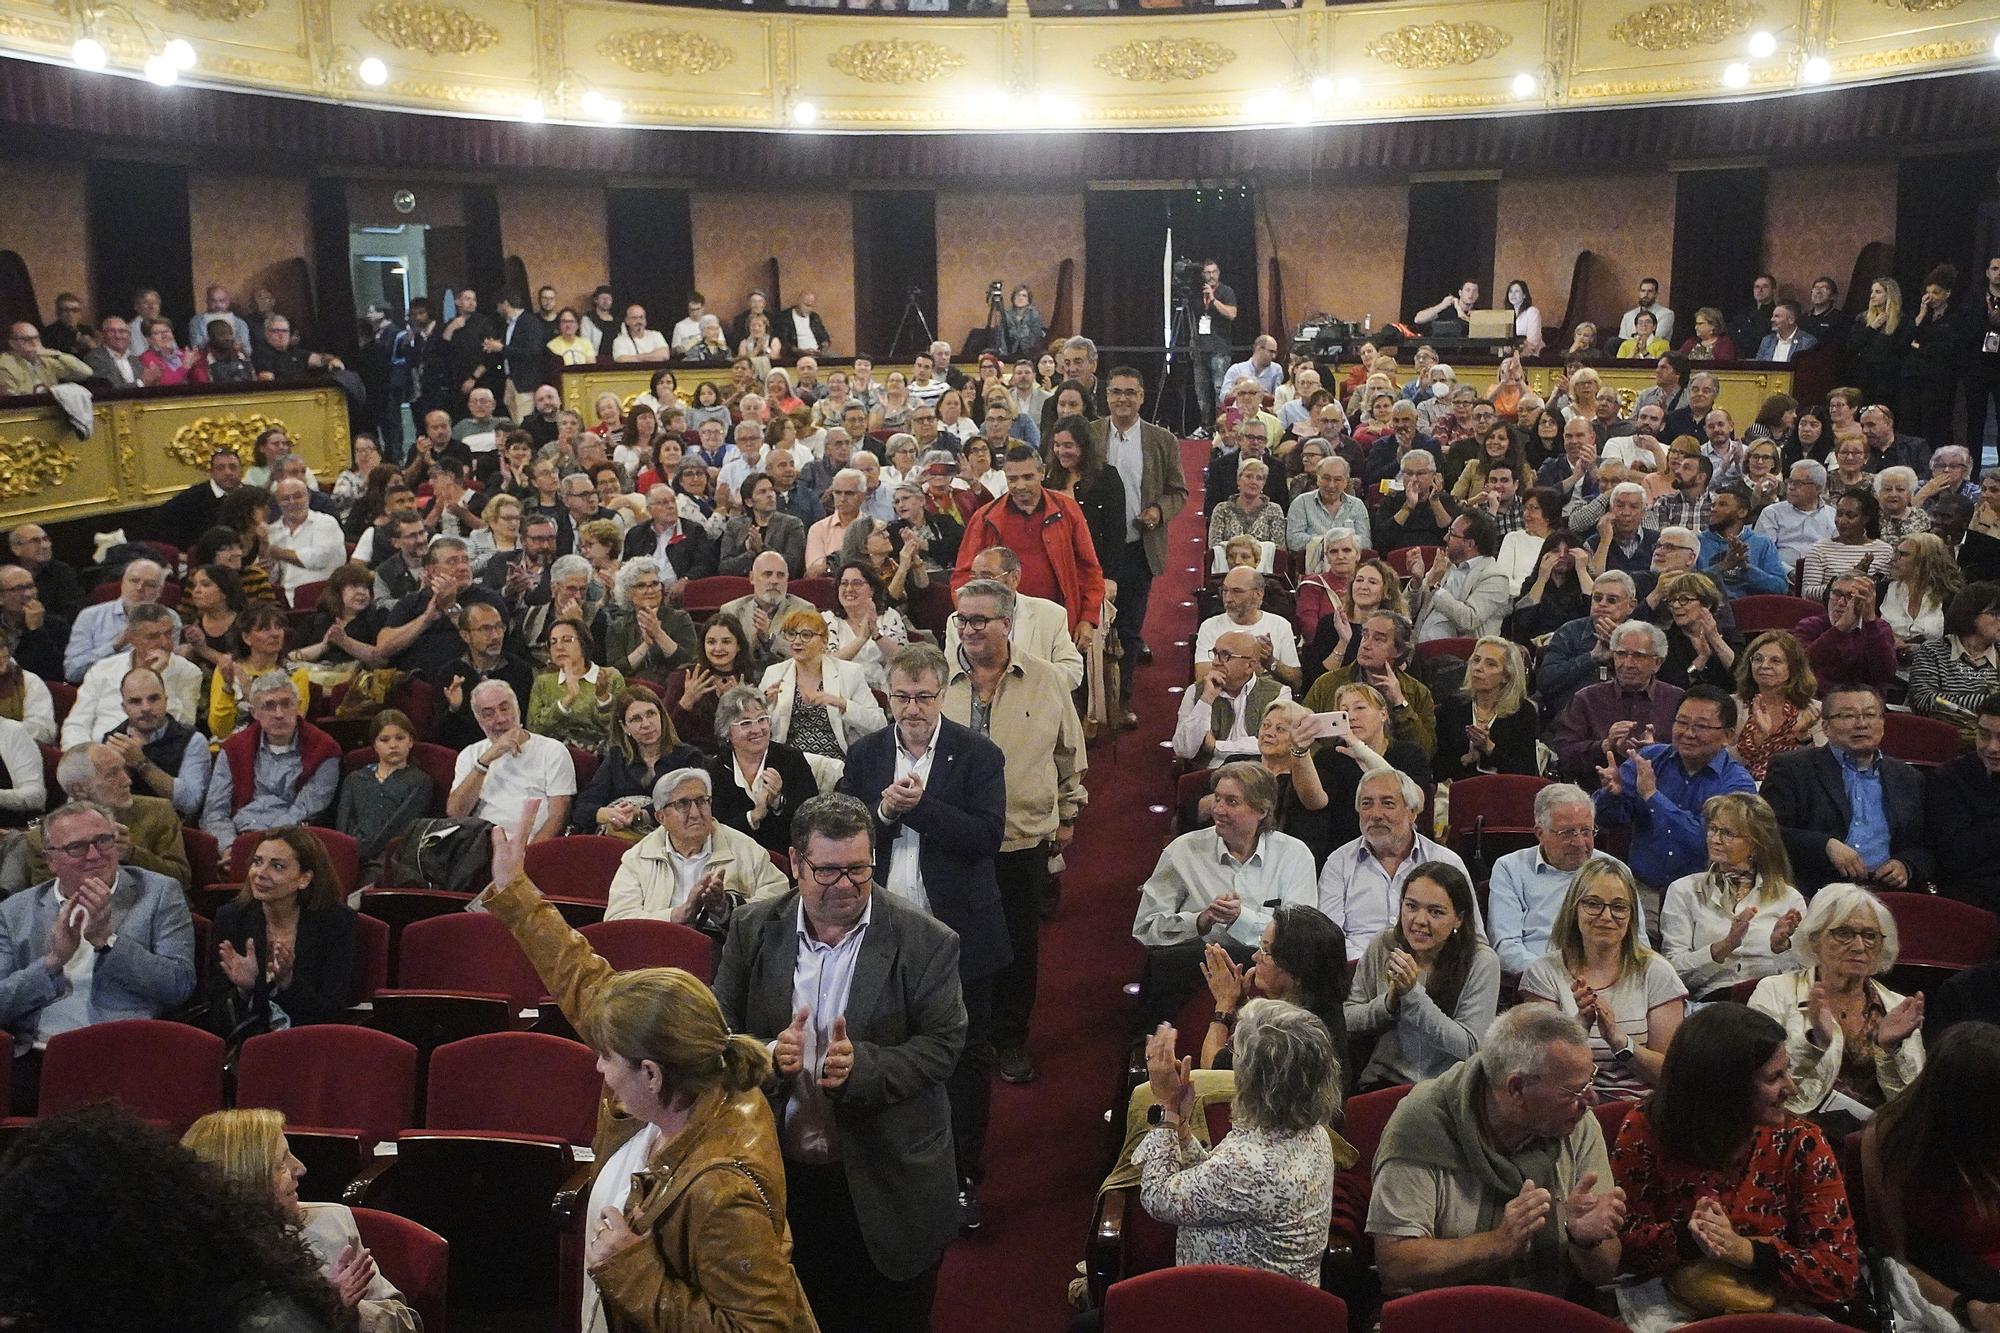 Les millors imatges de l'acte central de Campanya del PSC de Girona